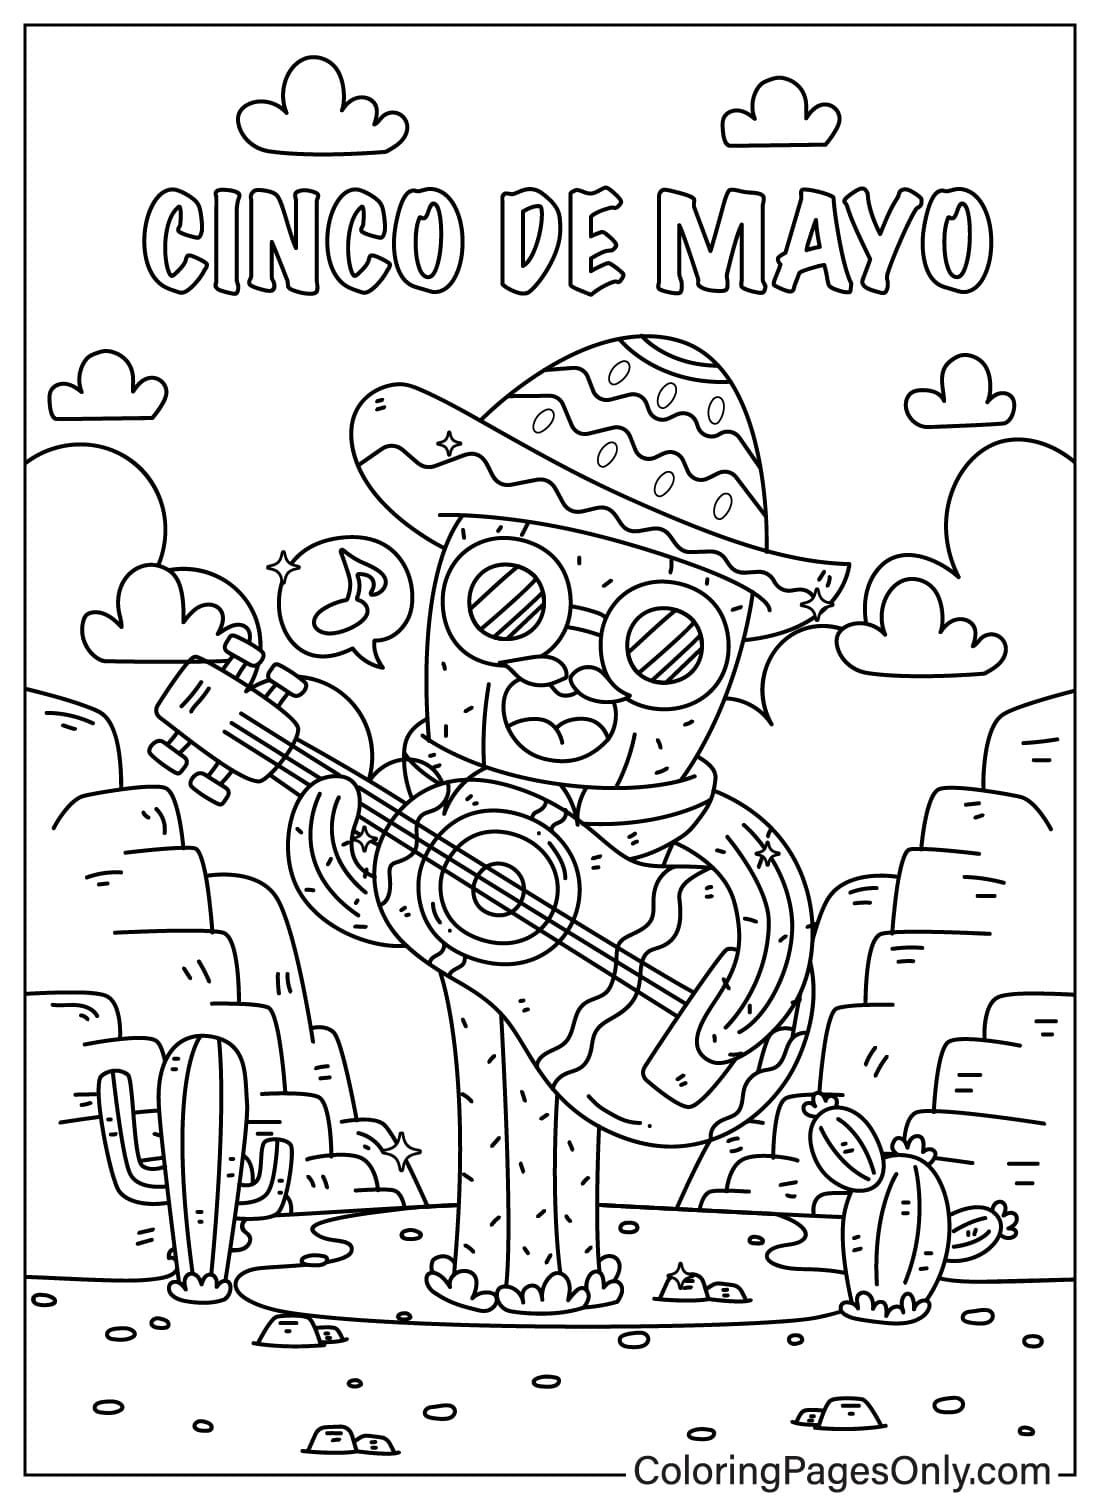 Cinco De Mayo De Cactus speelt terwijl hij zingt uit Cinco De Mayo